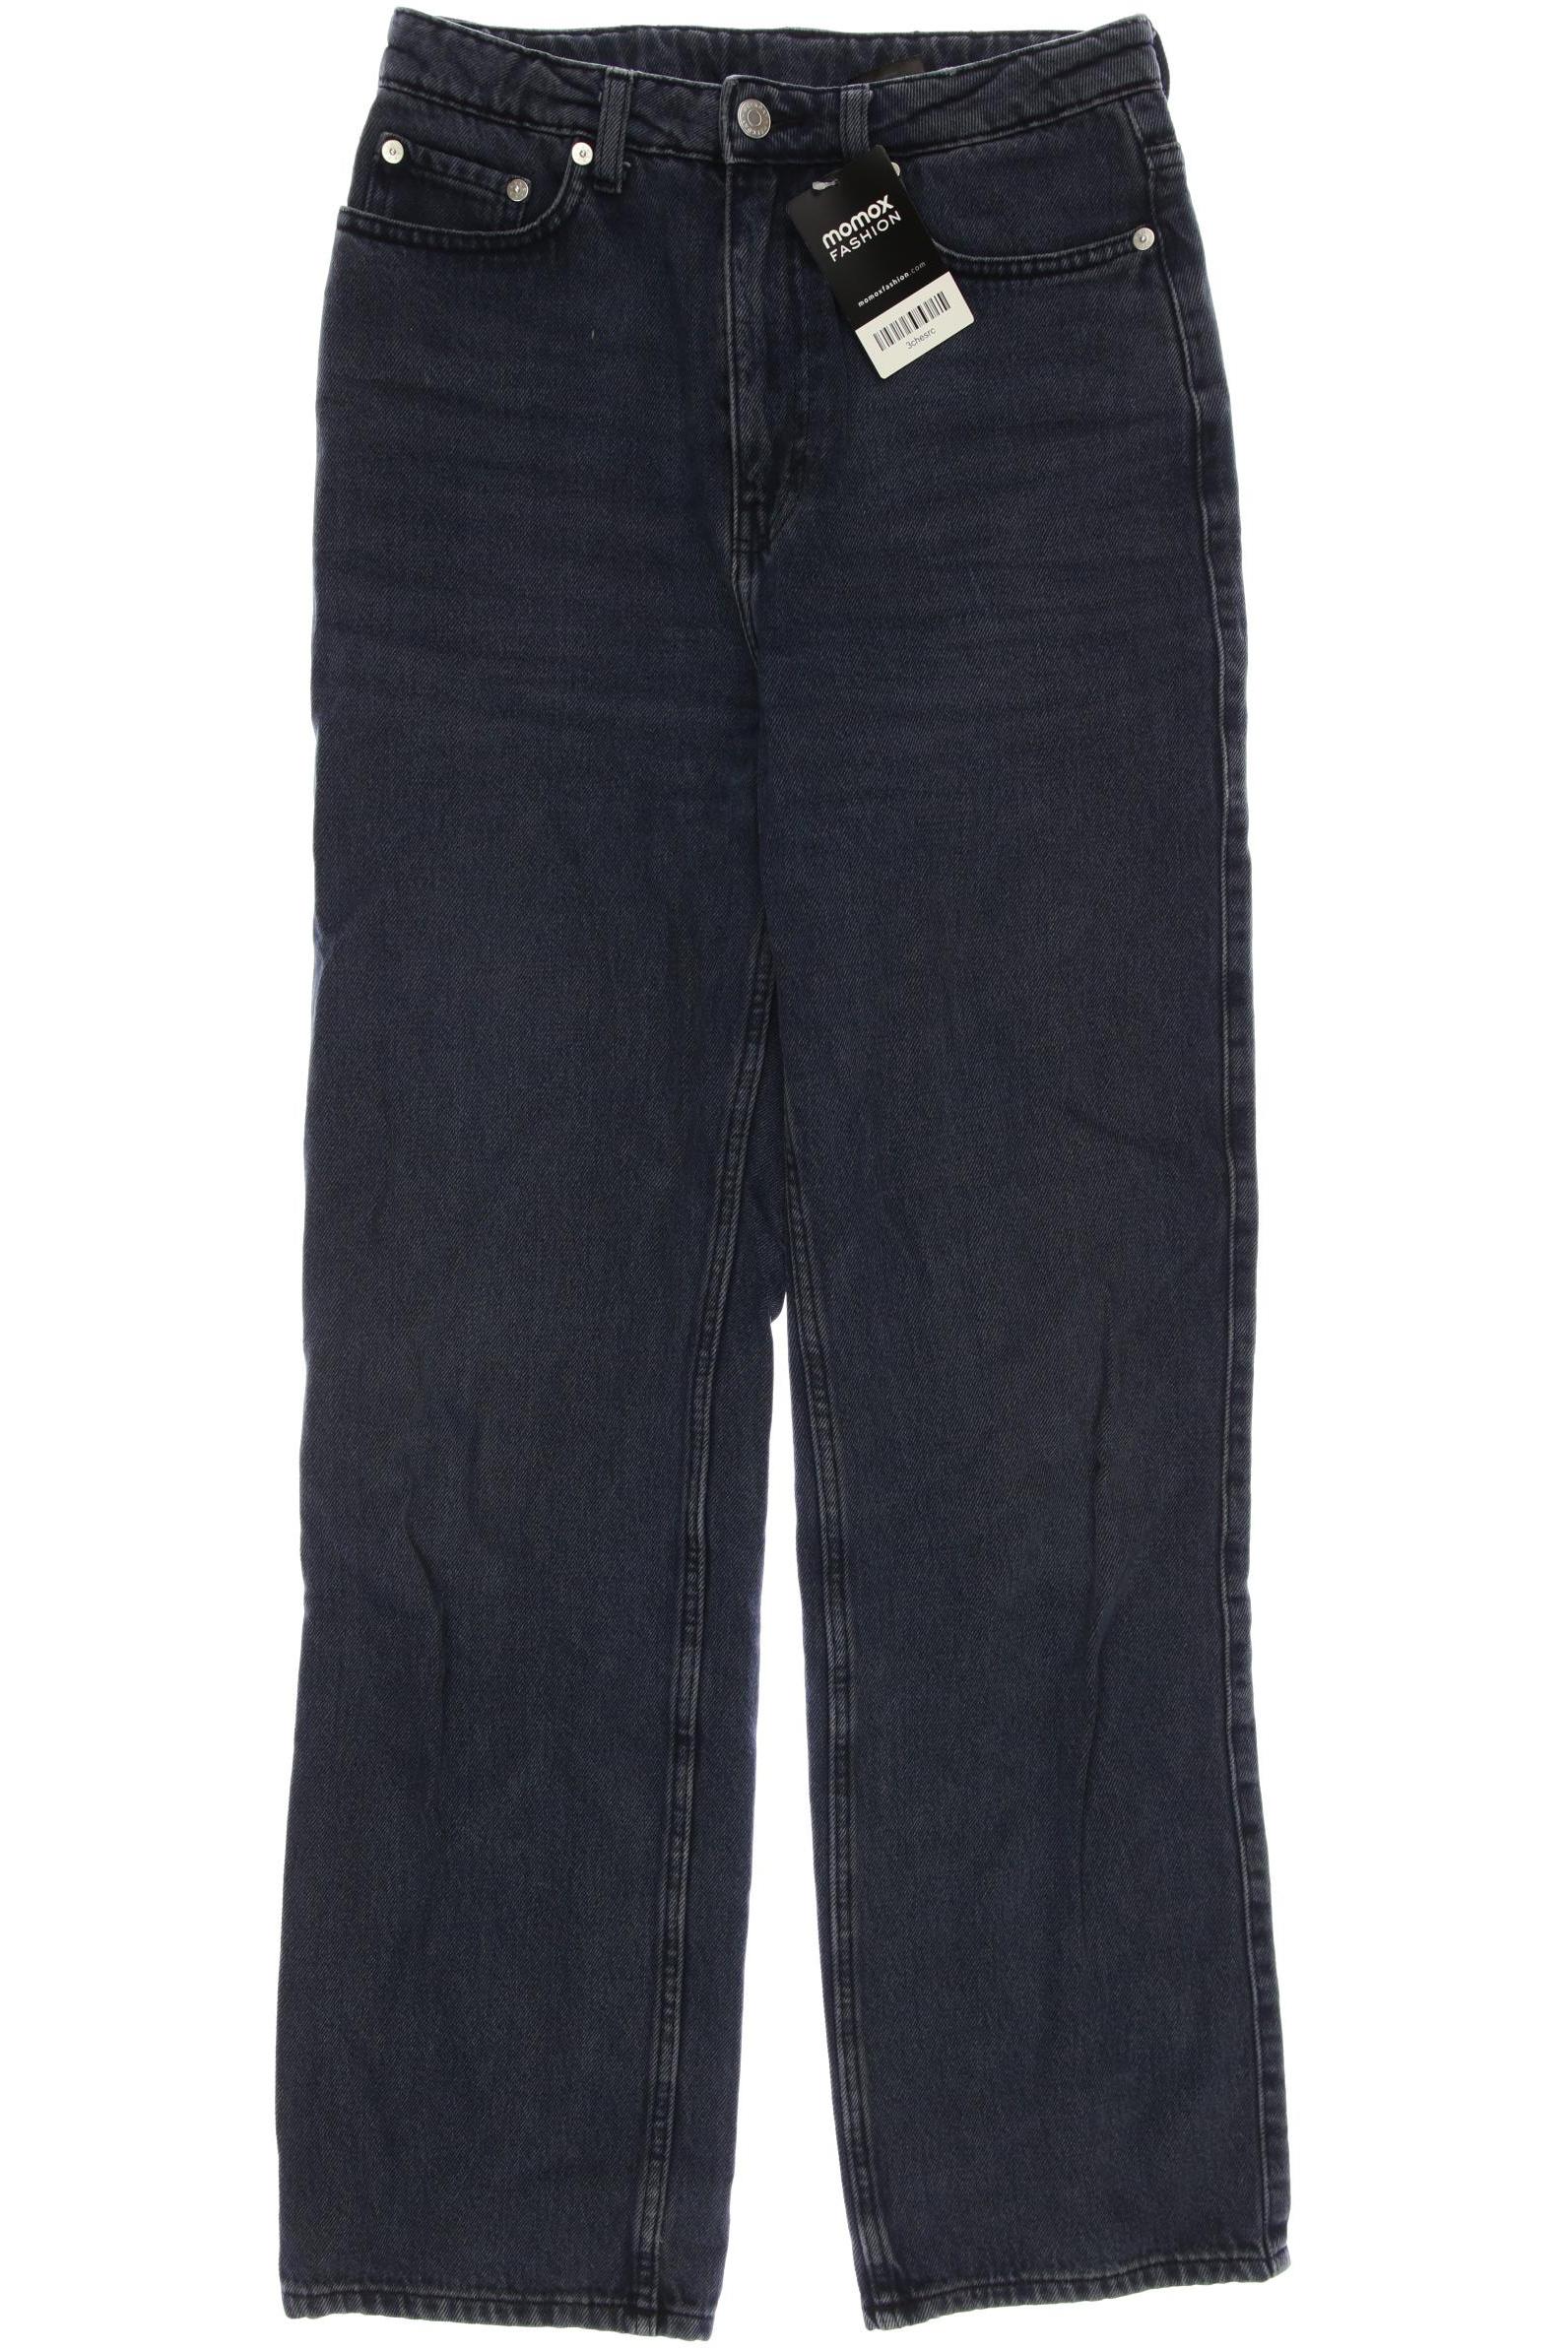 Weekday Damen Jeans, marineblau, Gr. 38 von Weekday